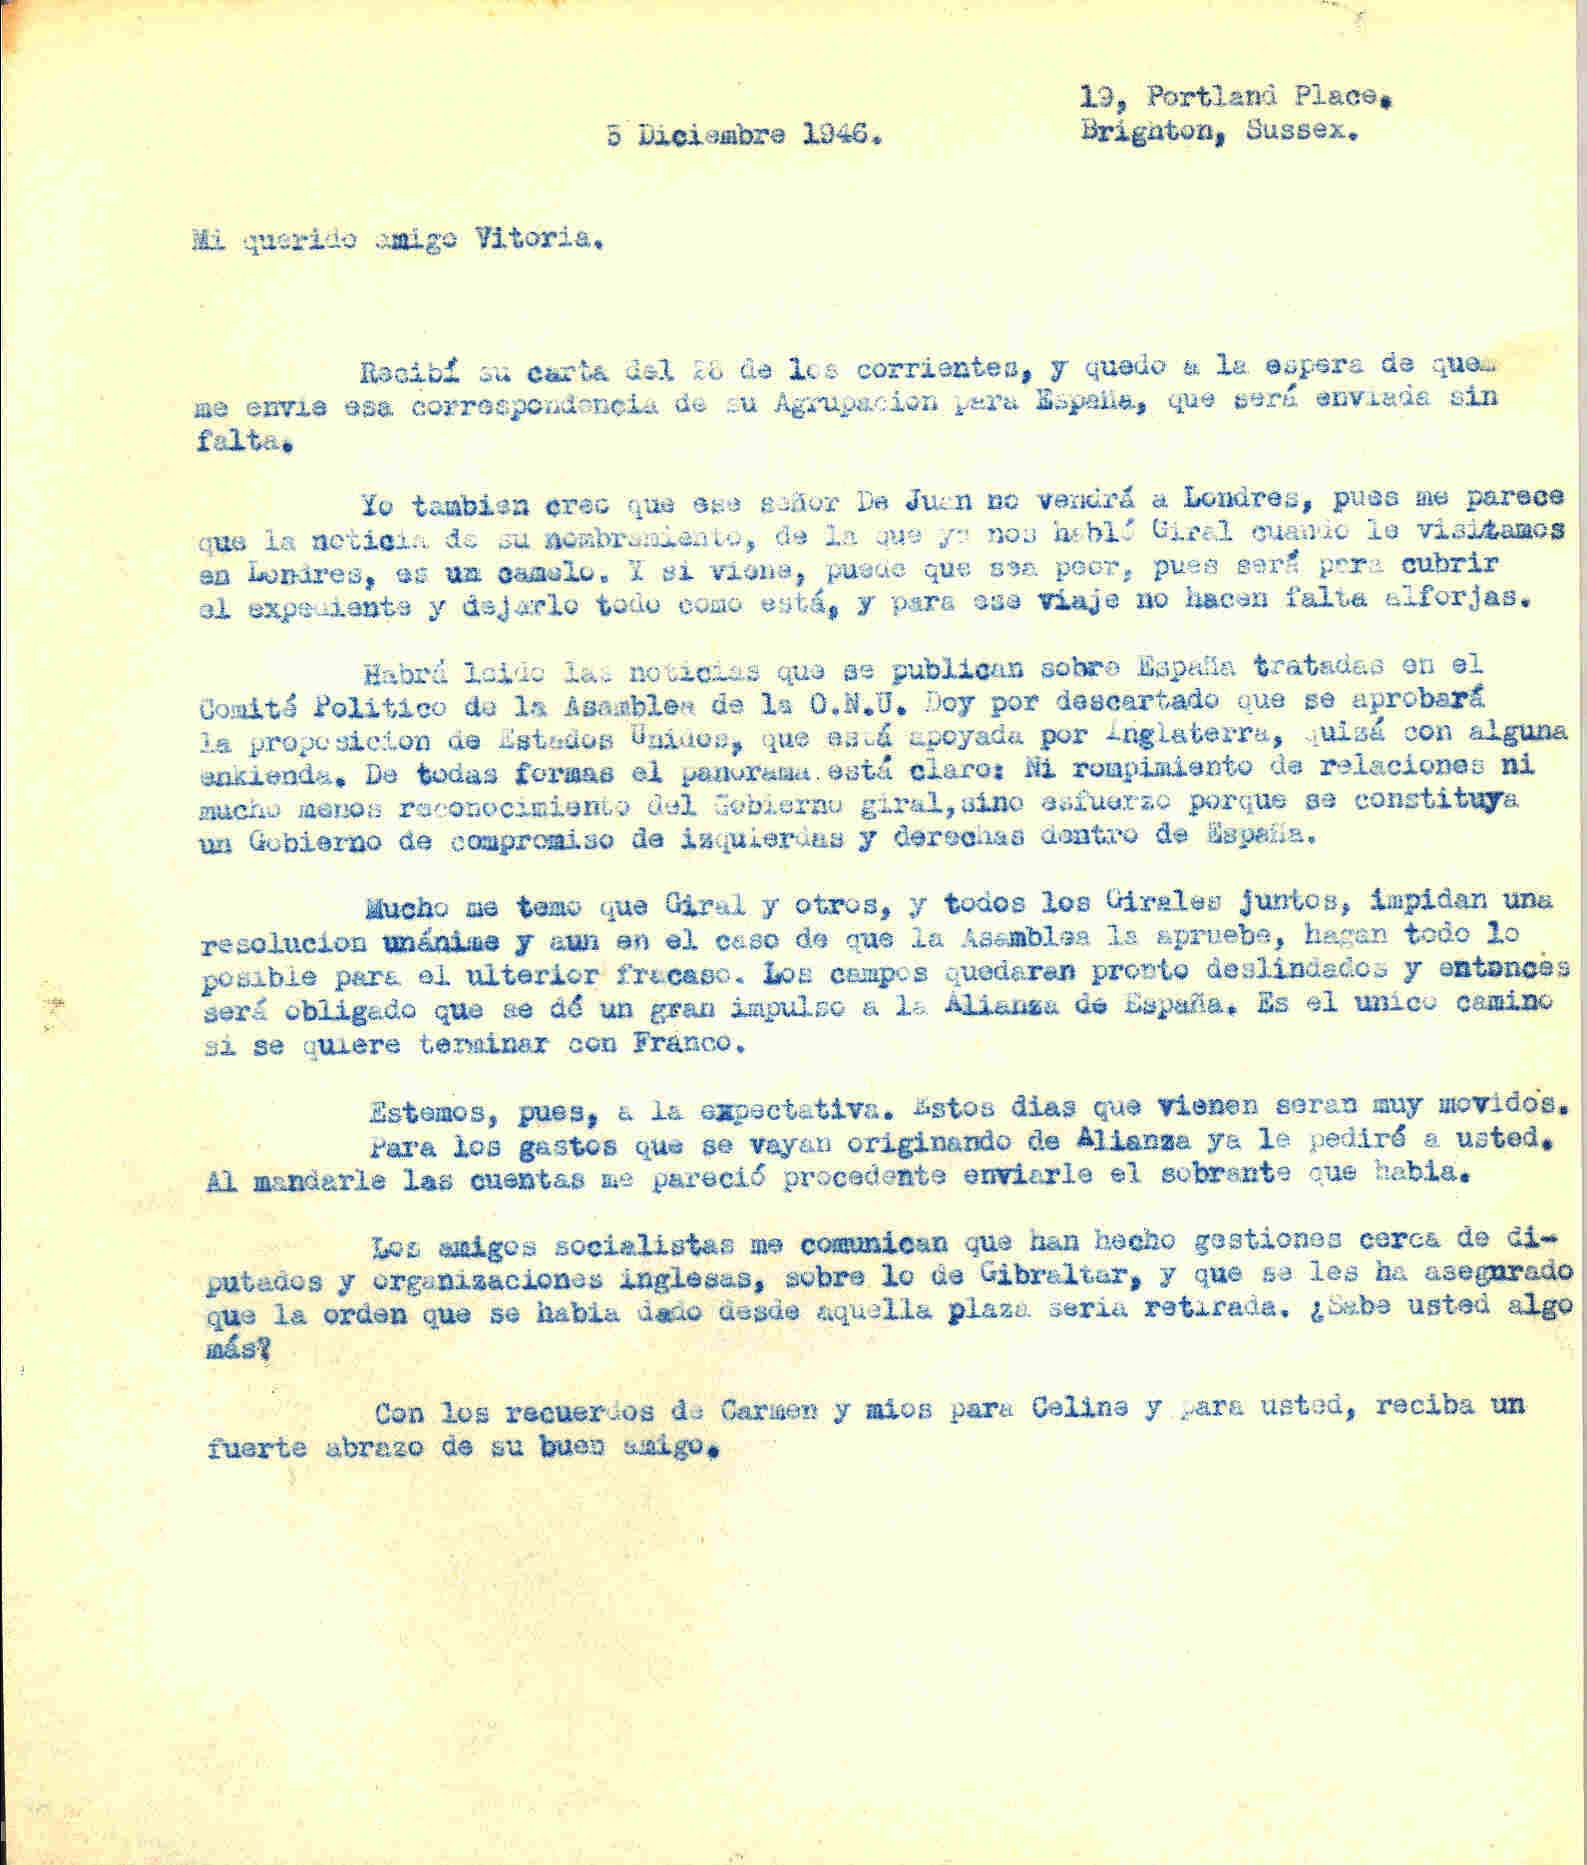 Carta a Roque Victoria en la que habla de noticias que se publican sobre España tratadas en el Comité Político de la Asamblea de la ONU; se habla de la constitución de un gobierno de compromiso de izquierdas y derechas dentro de España.